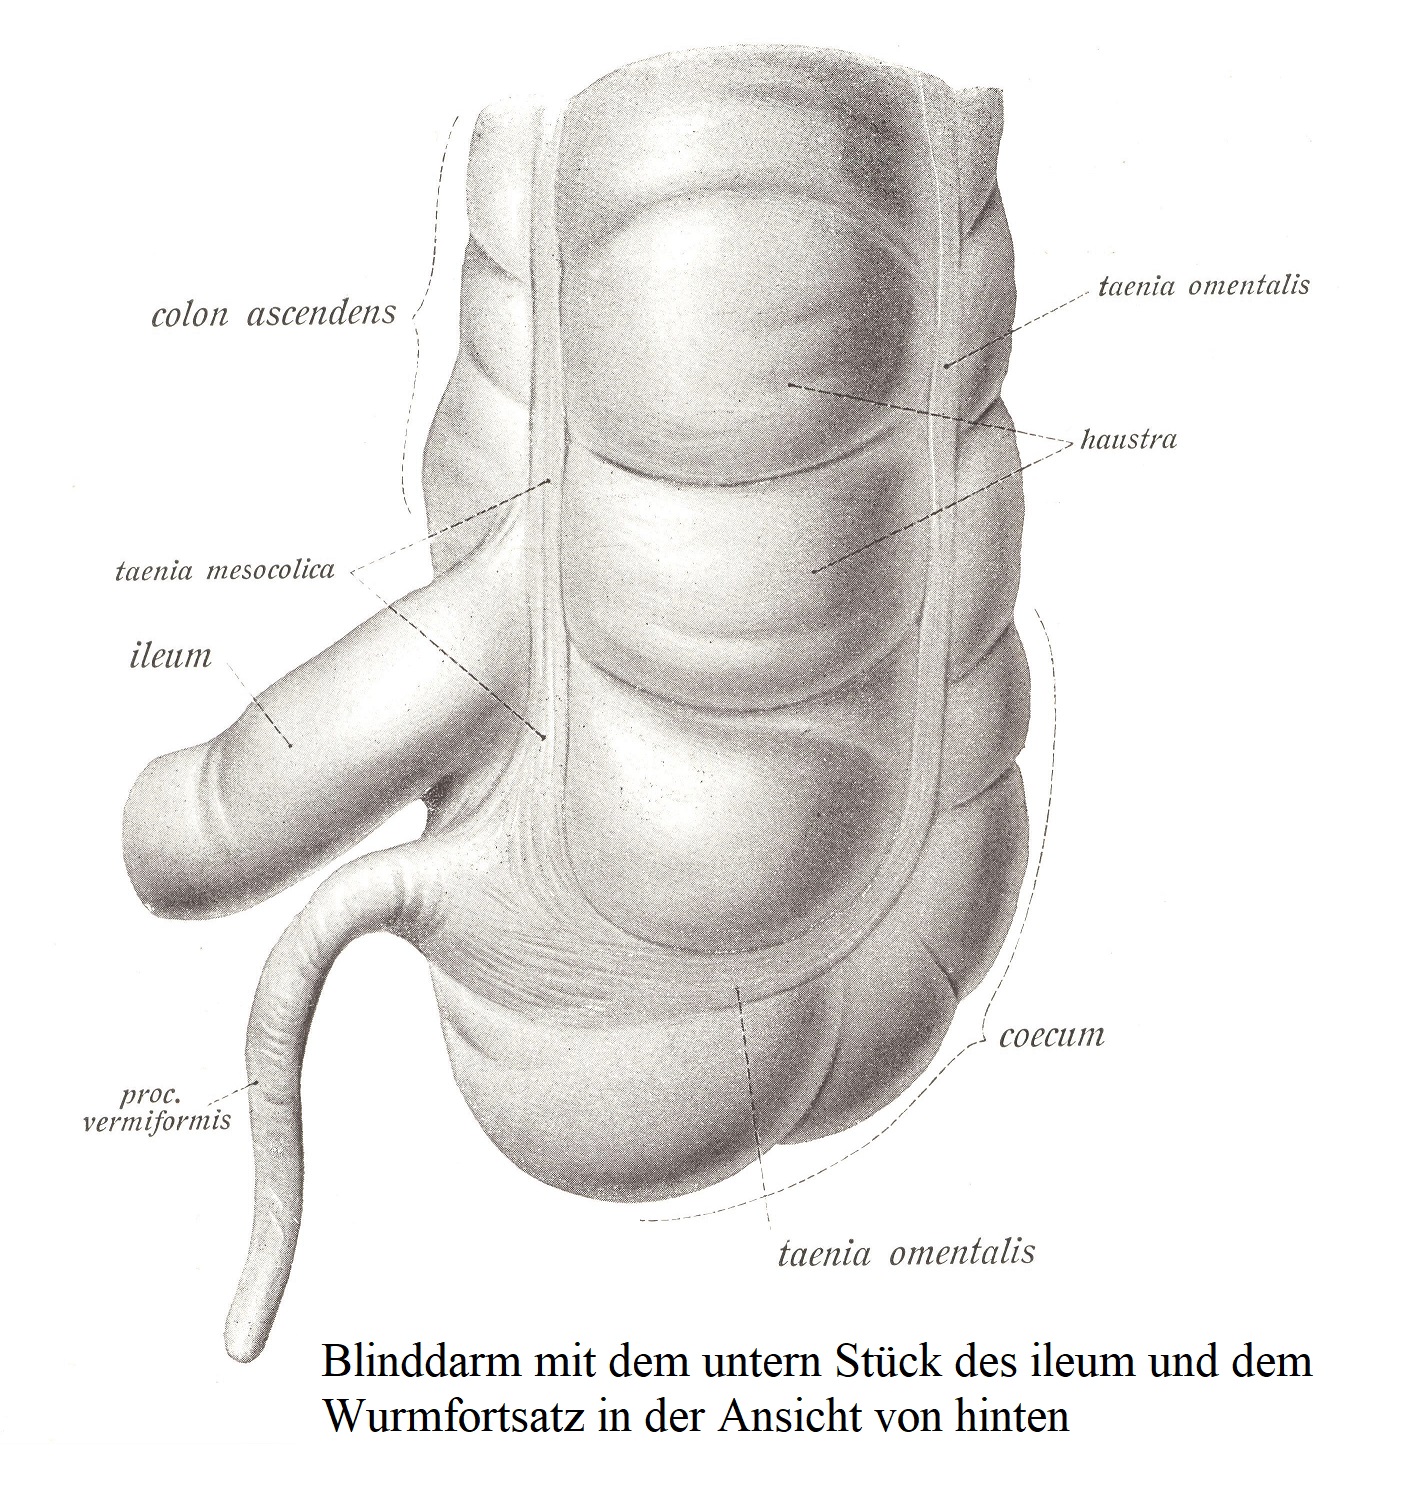 Слепая кишка с нижним отделом подвздошной кишки и червеобразным отростком, вид сзади